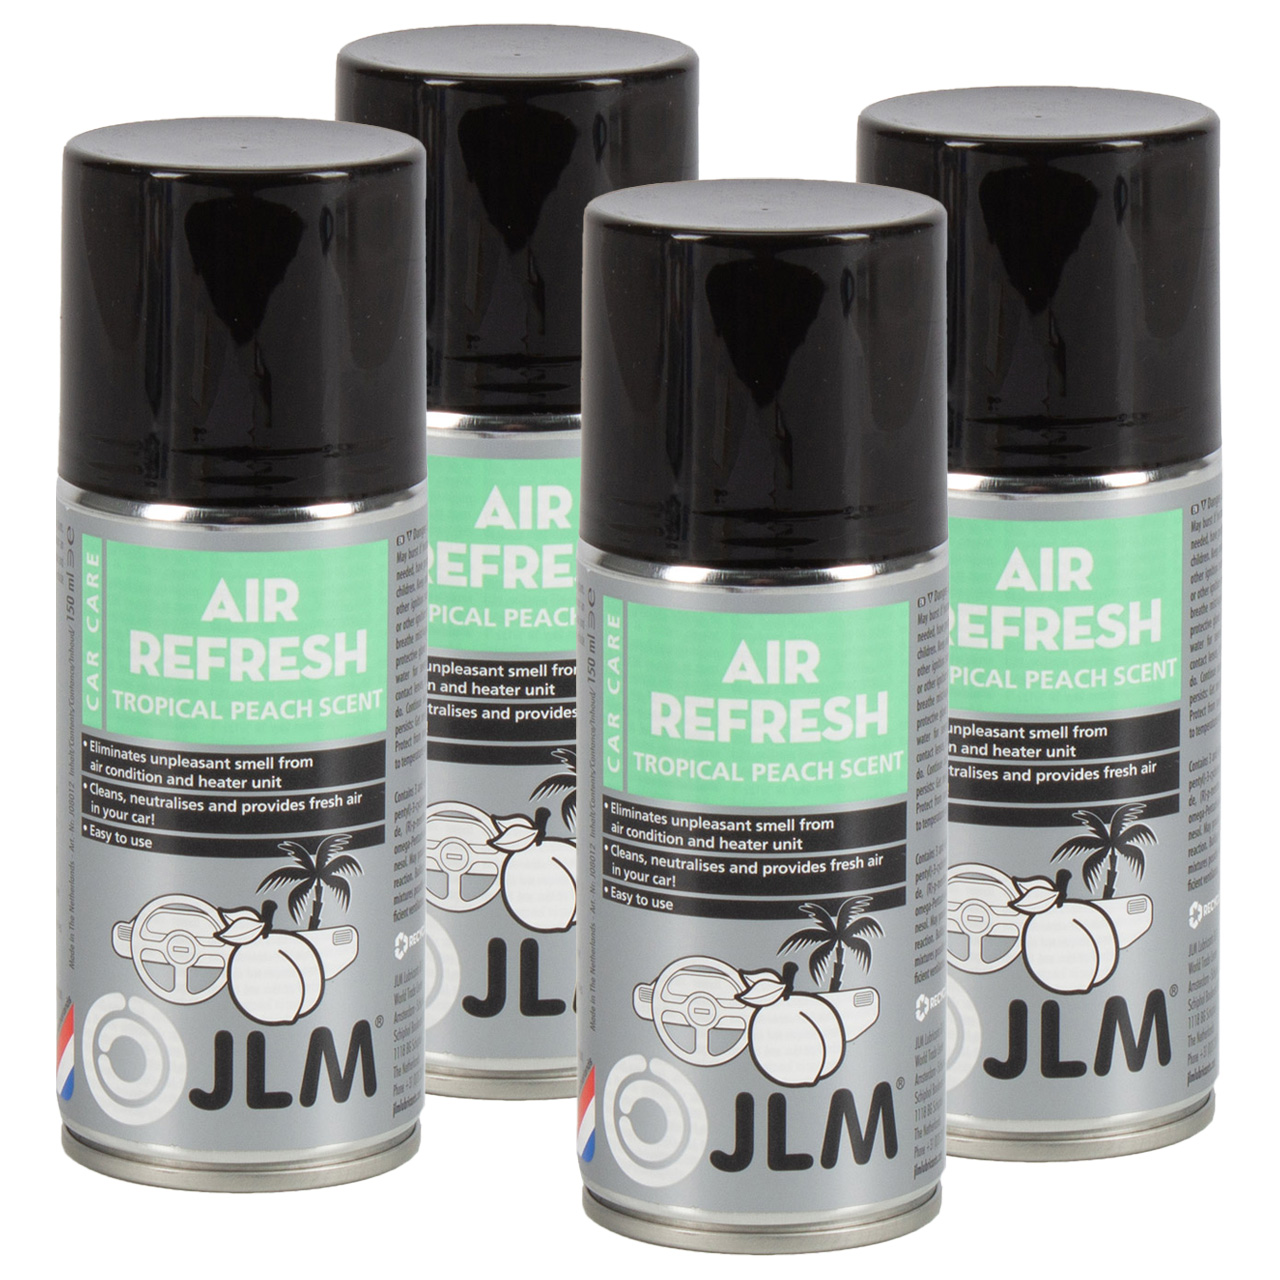 4x 150ml JLM J08012 Air Refresh Tropical Peach Klimareiniger Klimaanlagenreiniger Reinger